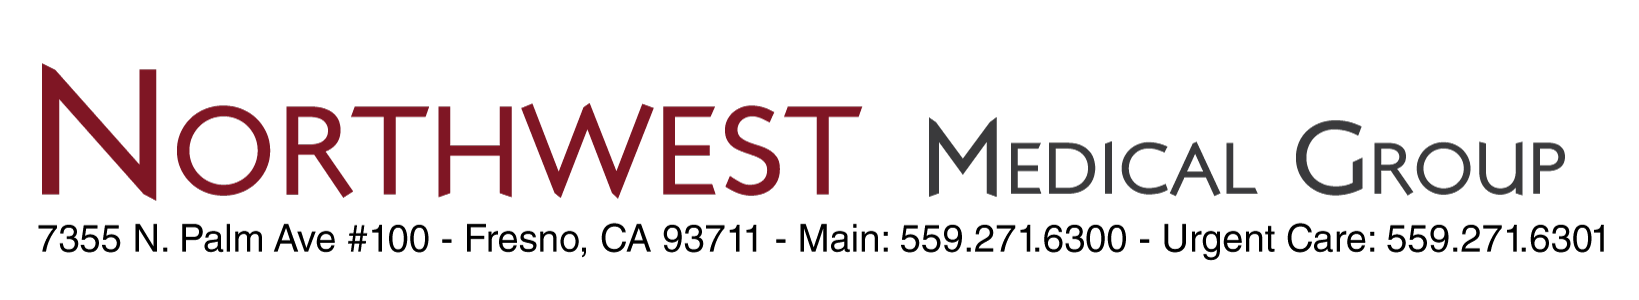 northwest medical group logo